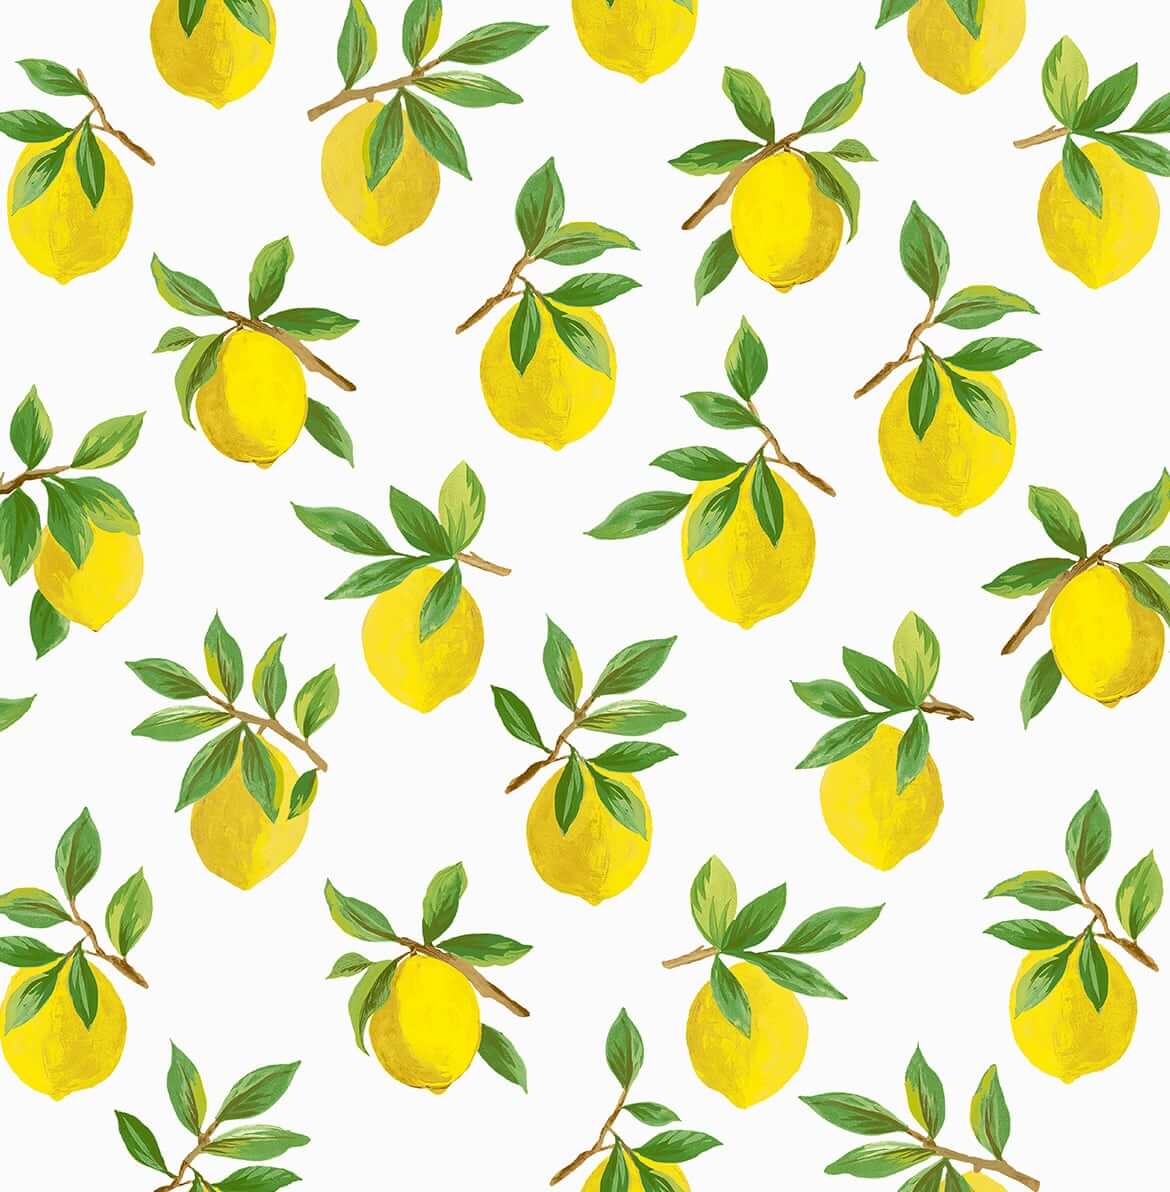 Daisy Bennett Lemoncello Peel & Stick Wallpaper - White & Yellow